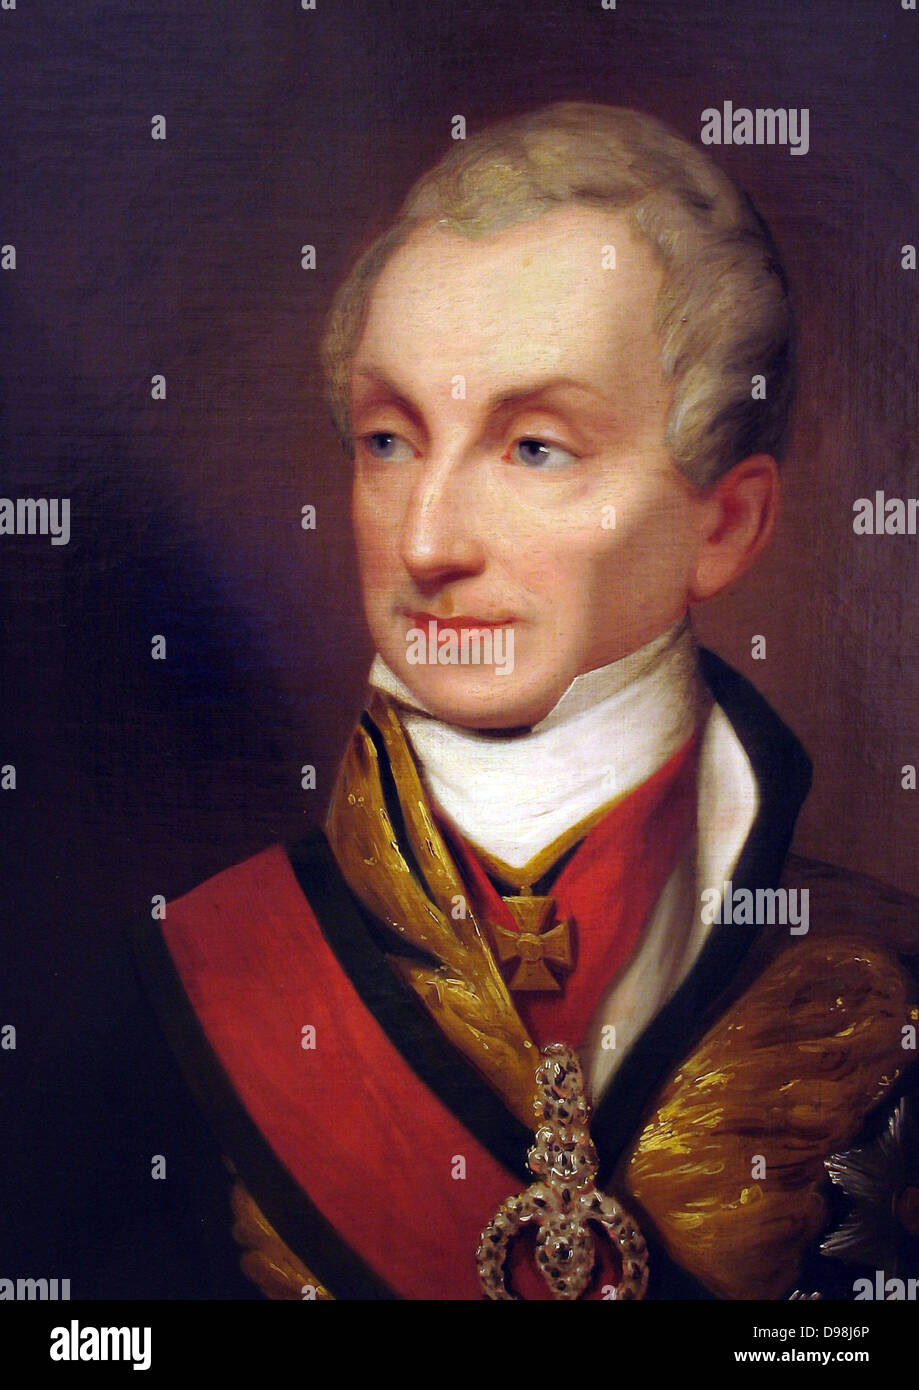 Fürst Klemens von Metternich 1773 – 1859. Deutschstämmiger österreichischer Politiker und Staatsmann. Porträt des Fürsten Metternich ca. Stockfoto